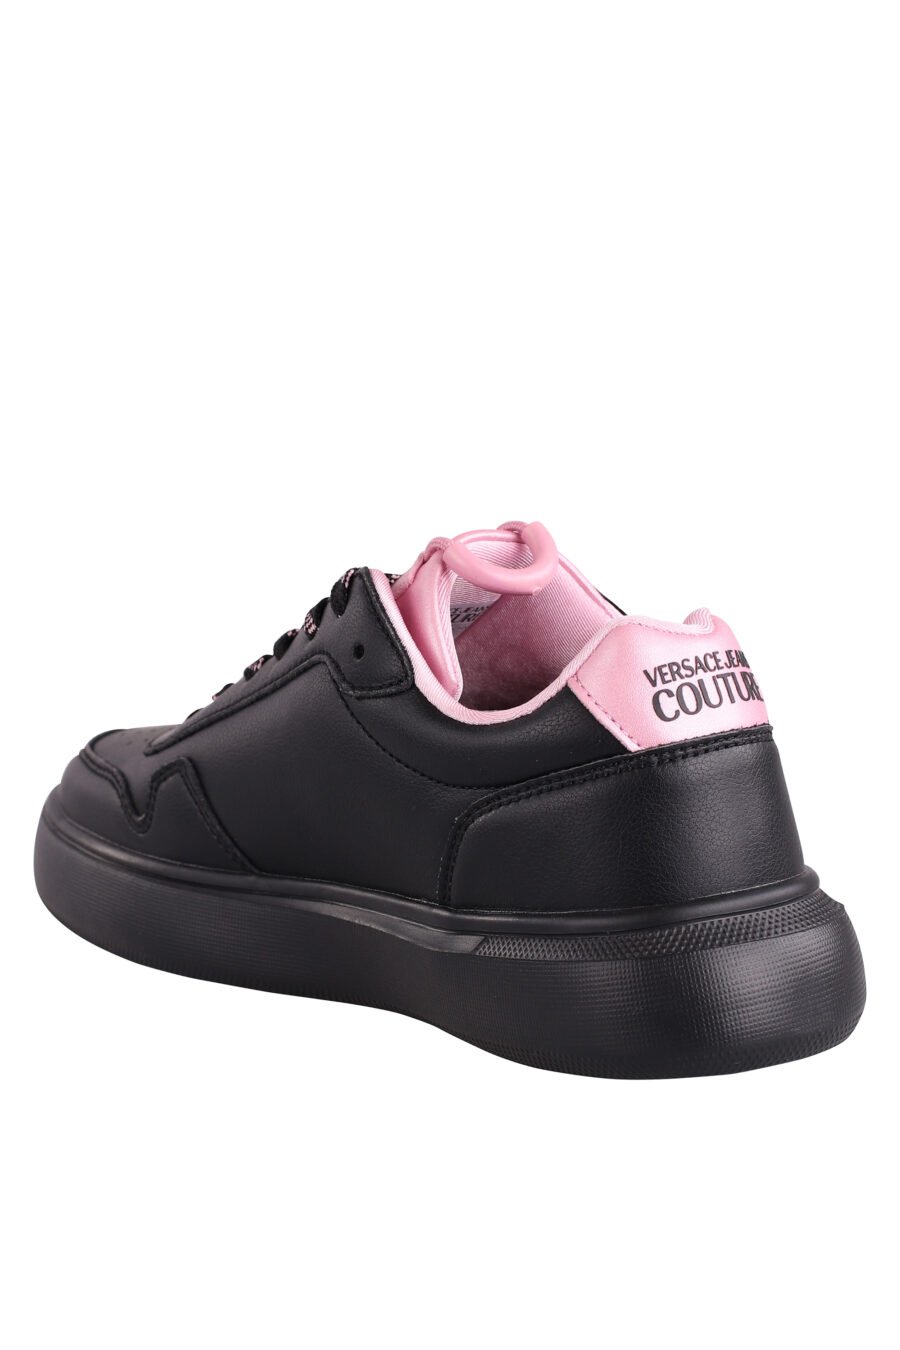 Zapatillas negras con detalles y logo rosa - IMG 9062